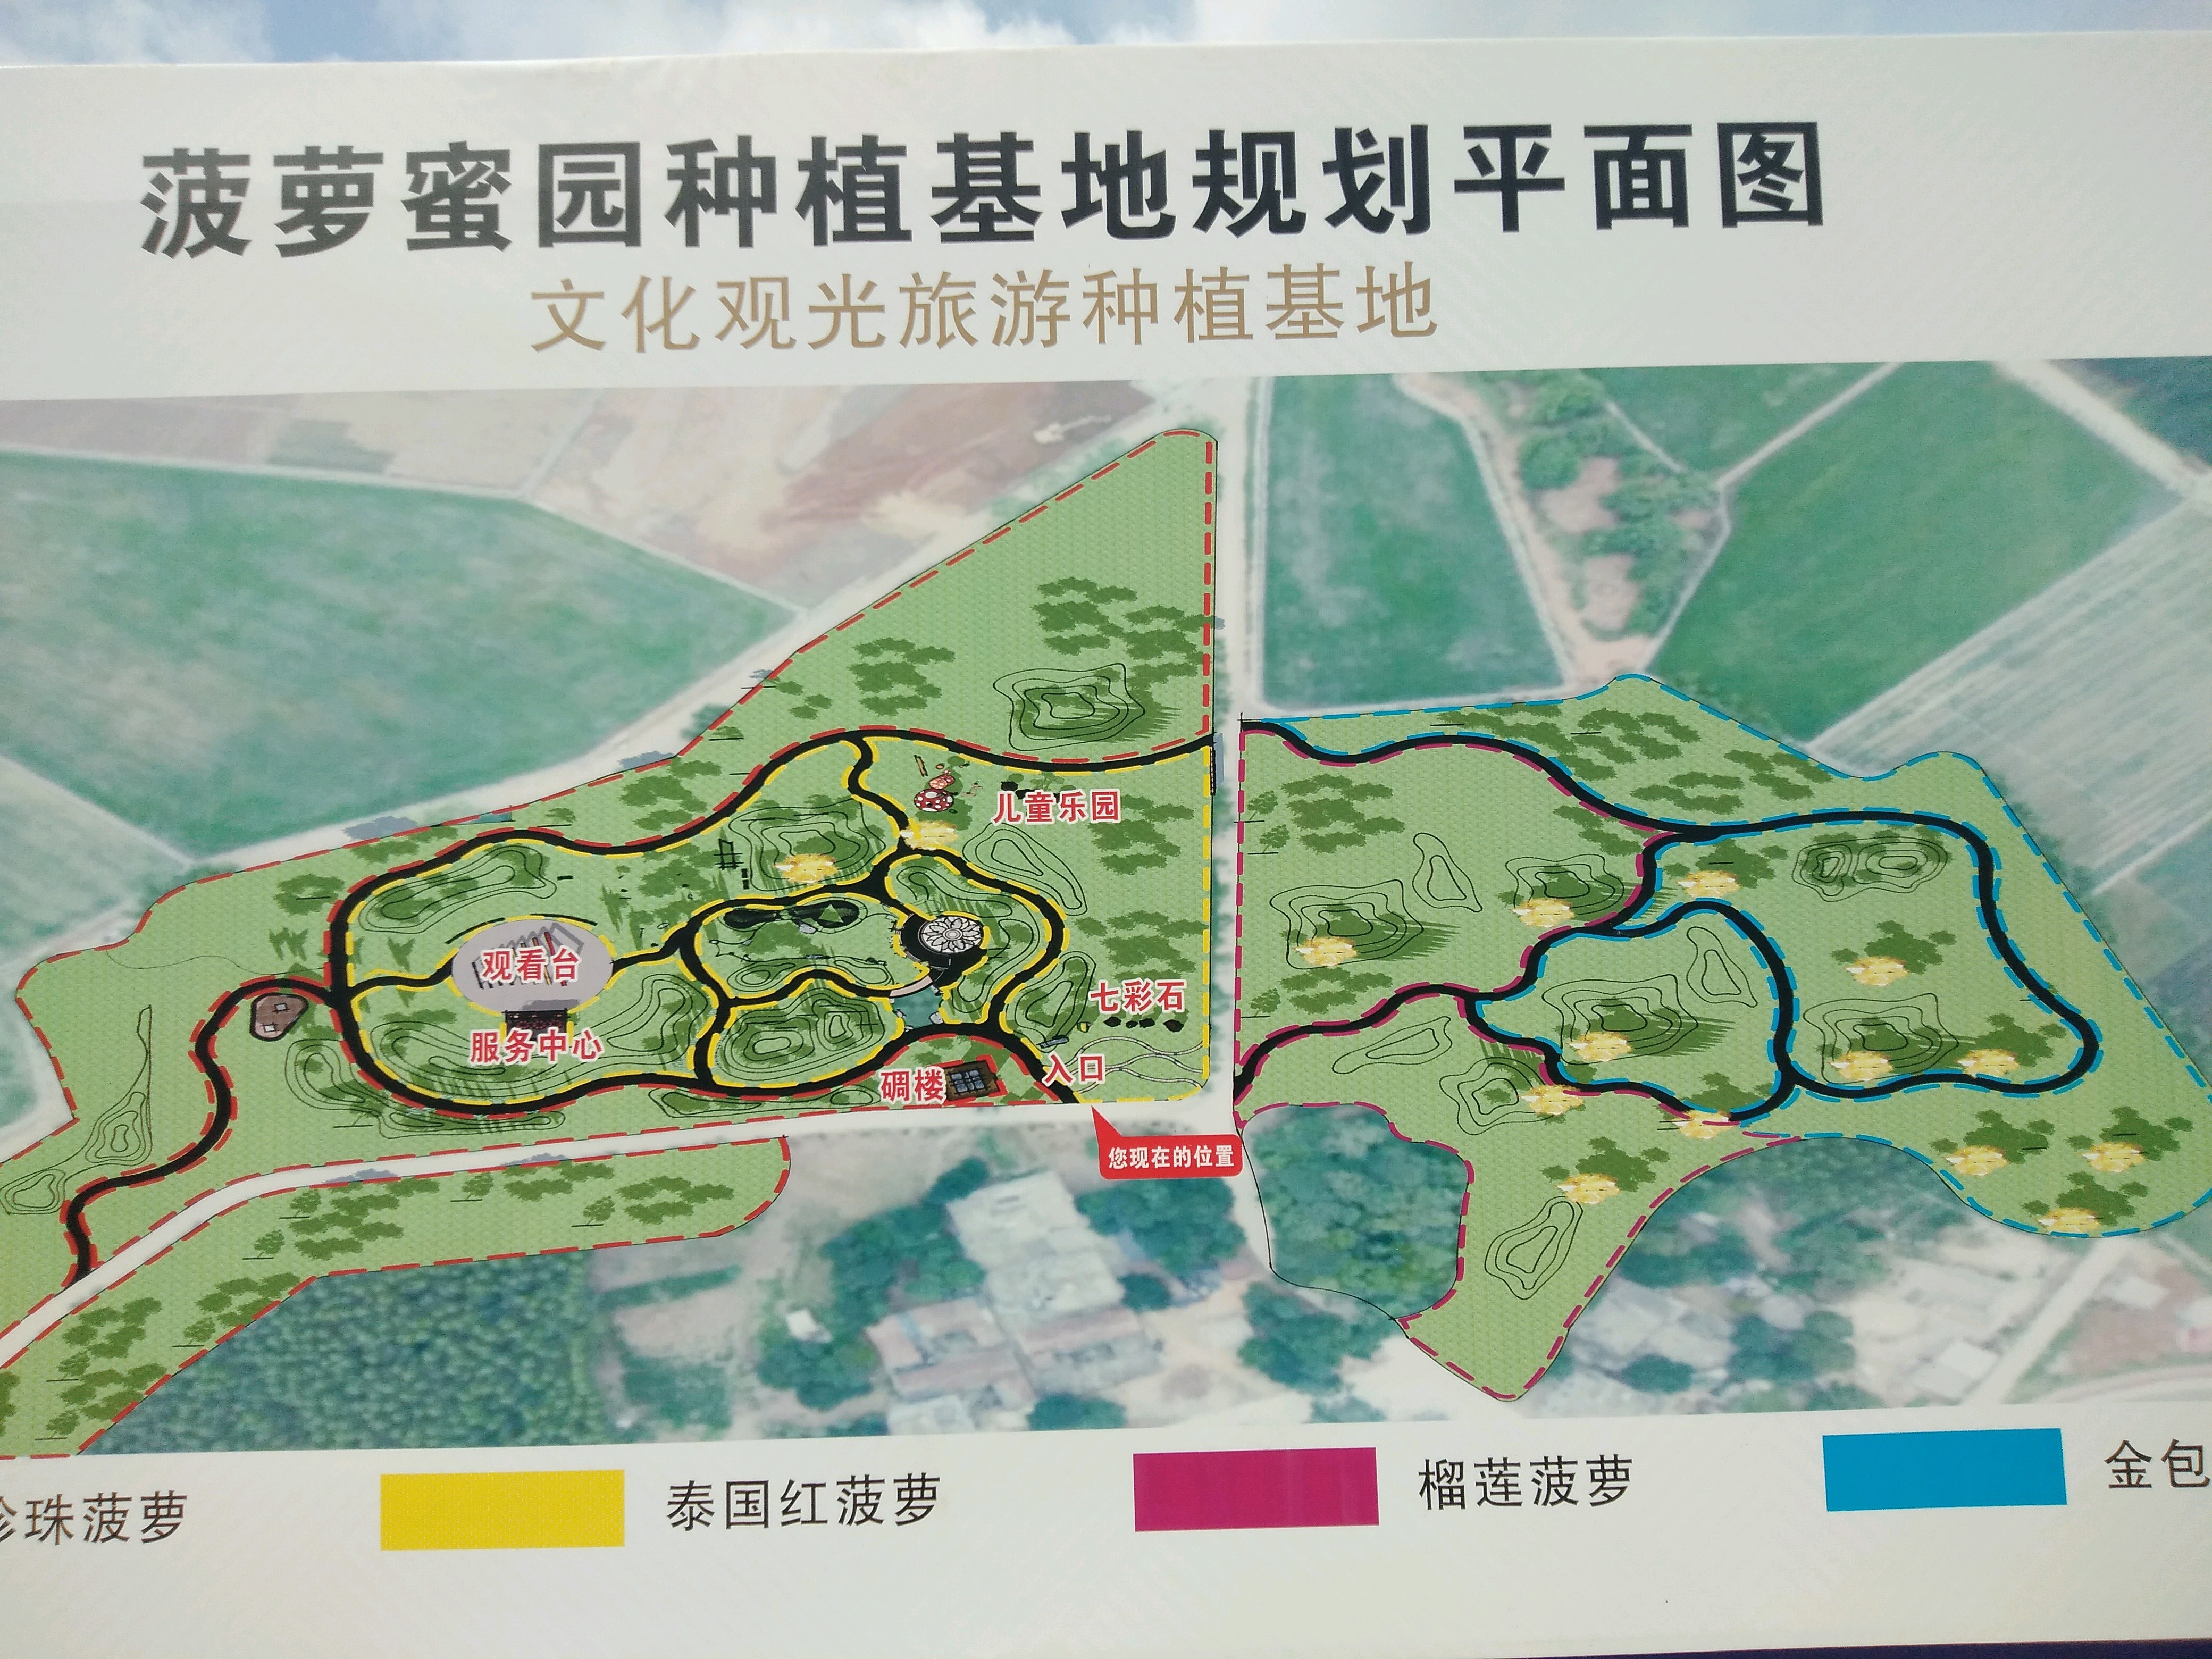 老马村菠萝蜜园种植基地规划图。